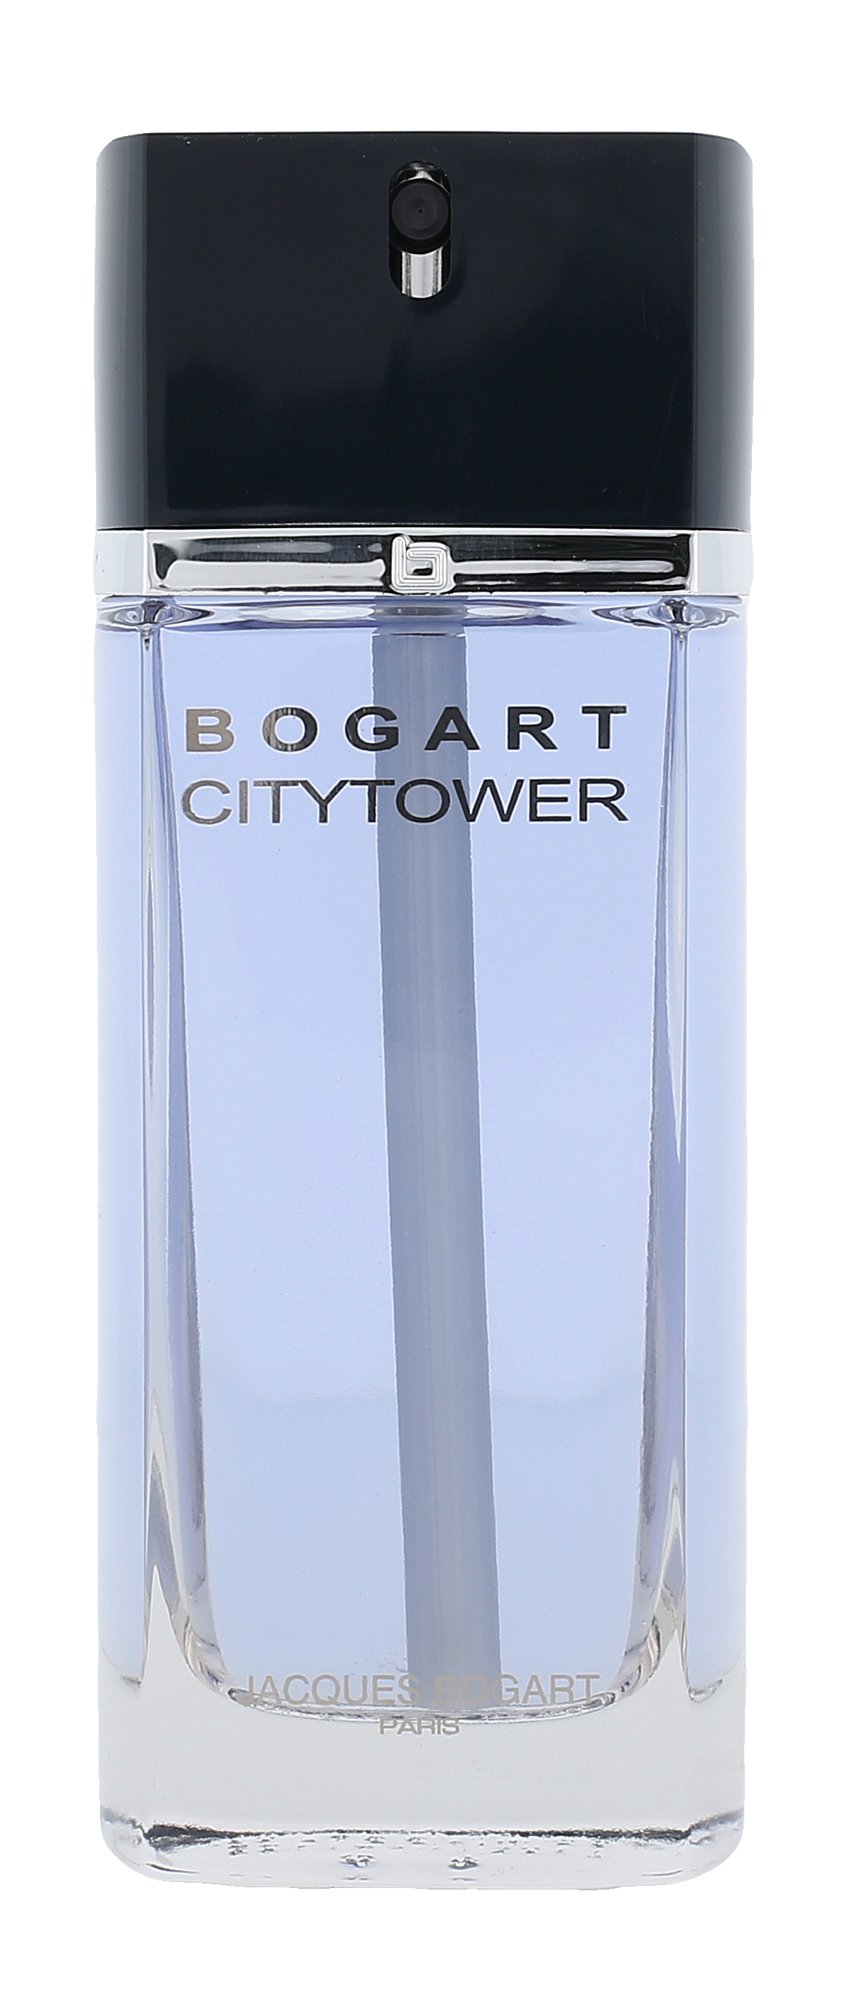 Jacques Bogart Bogart CityTower, Toaletná voda 100ml - Tester